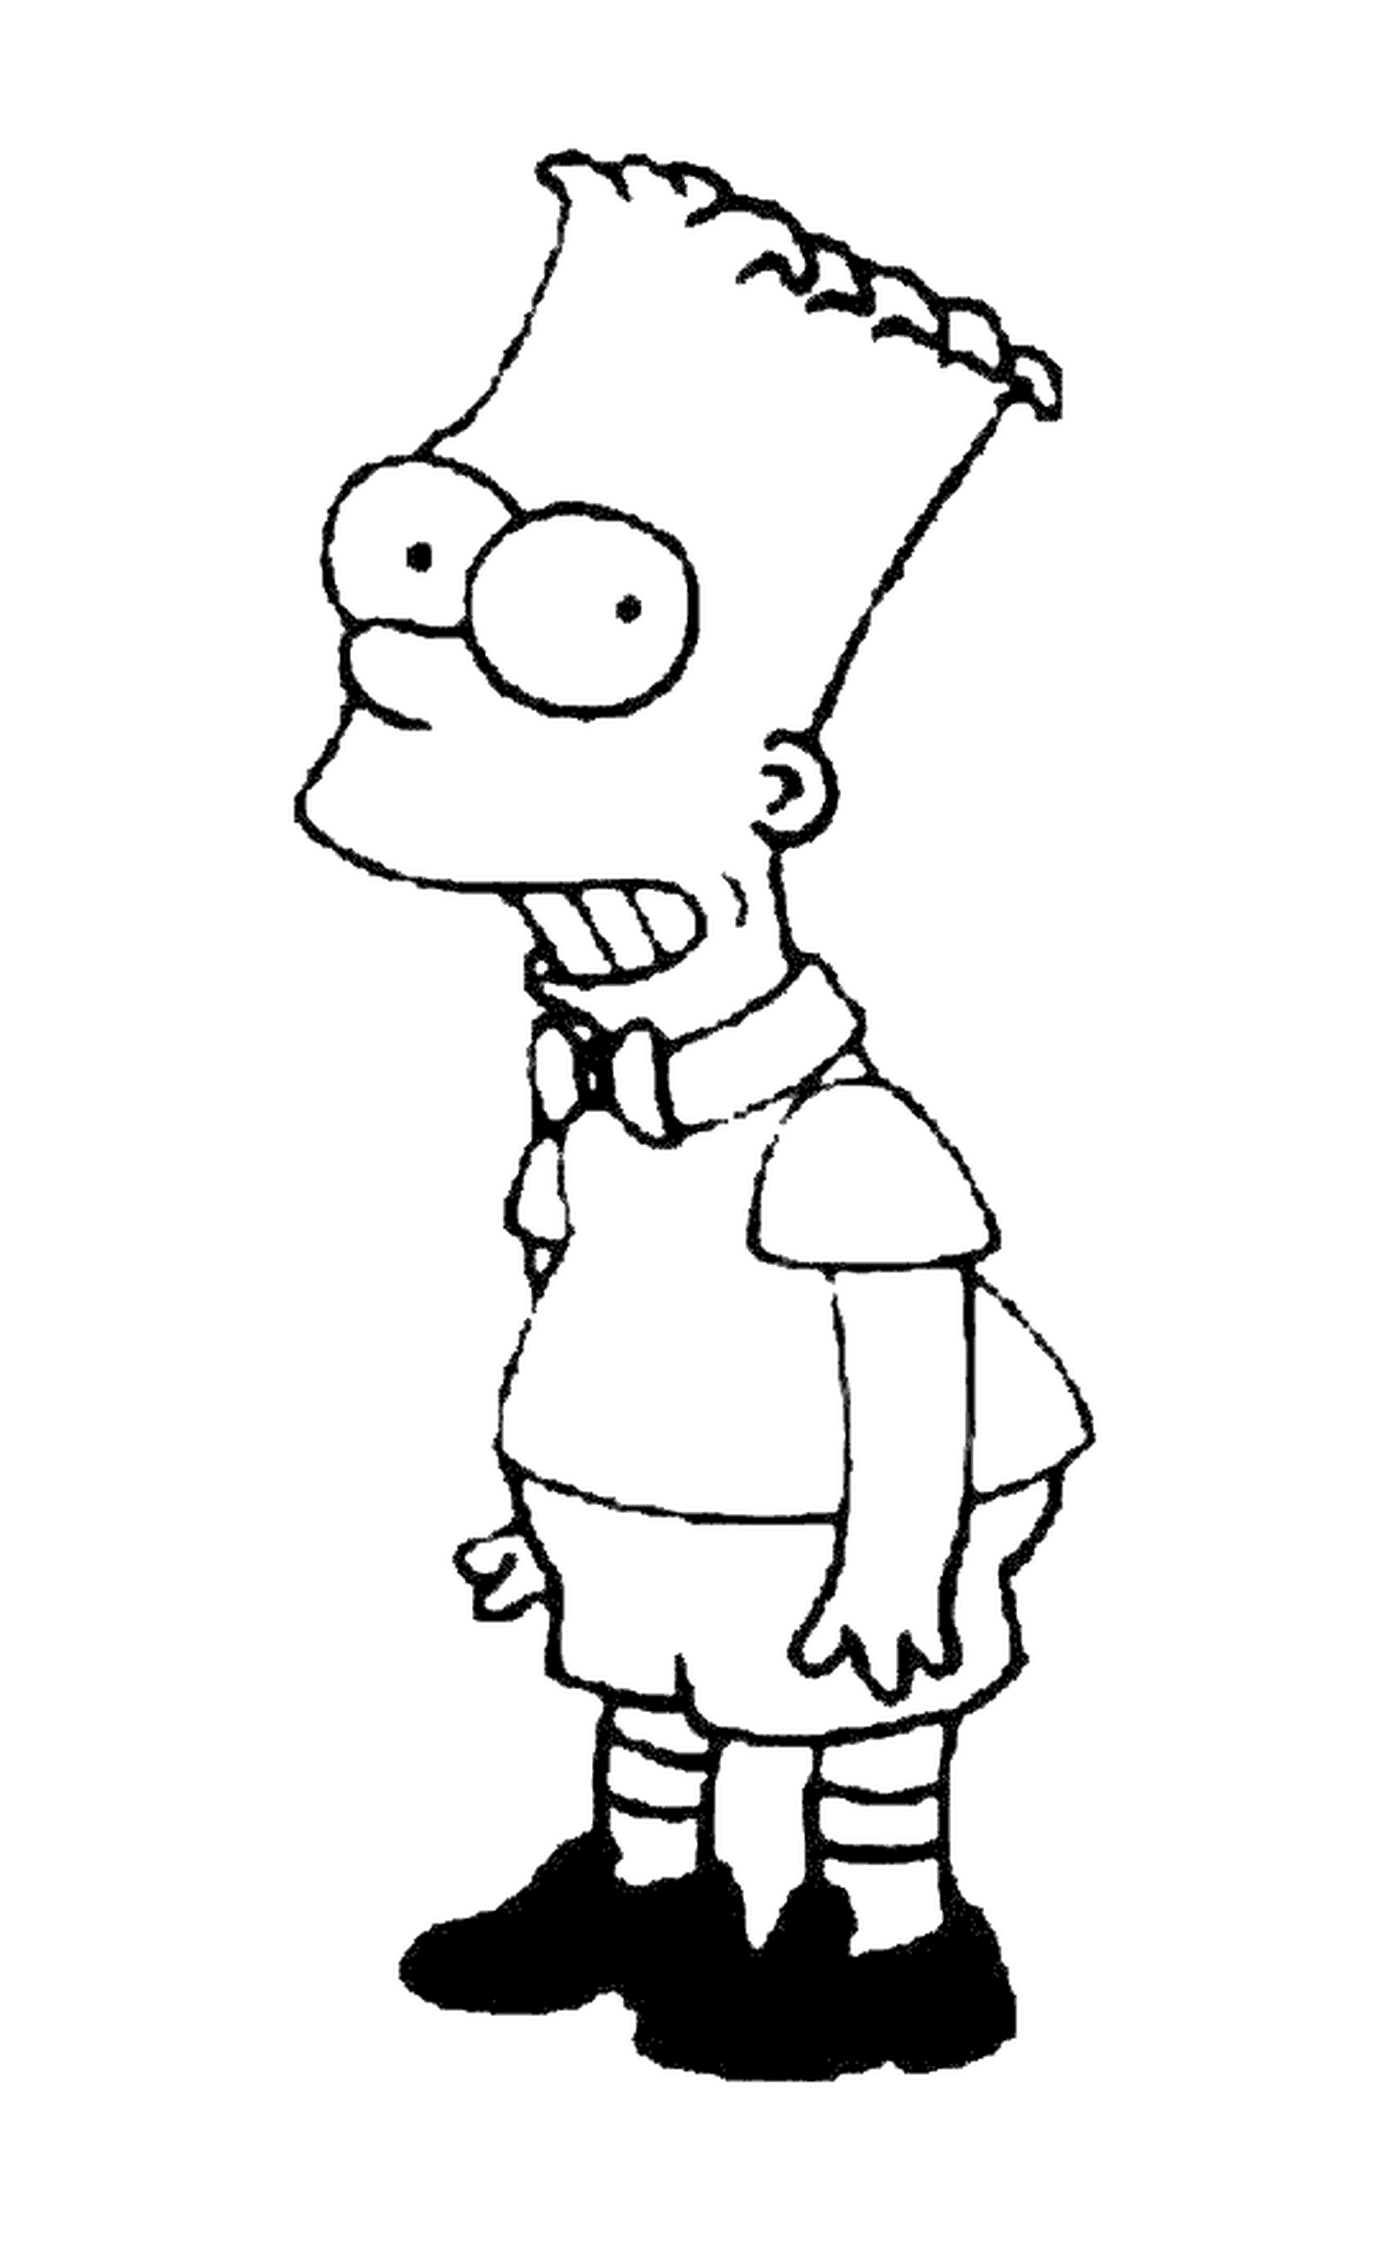  Bart como uma criança modelo, caráter dos Simpsons 